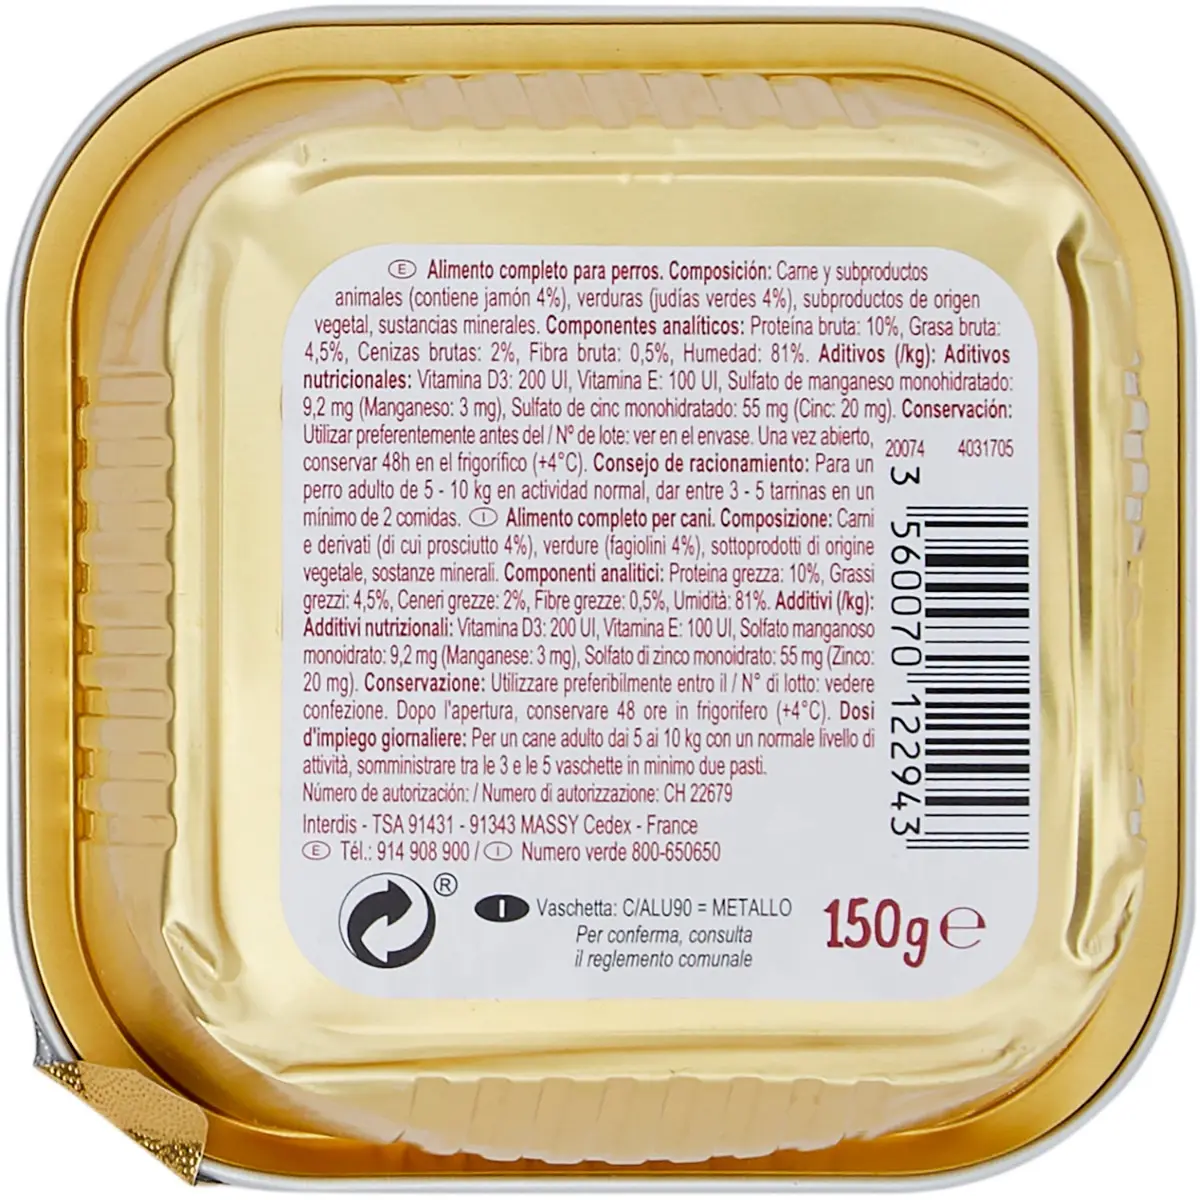 Hrana umeda pentru caini adulti  Carrefour Companino Vitalive cu vita, 150 g